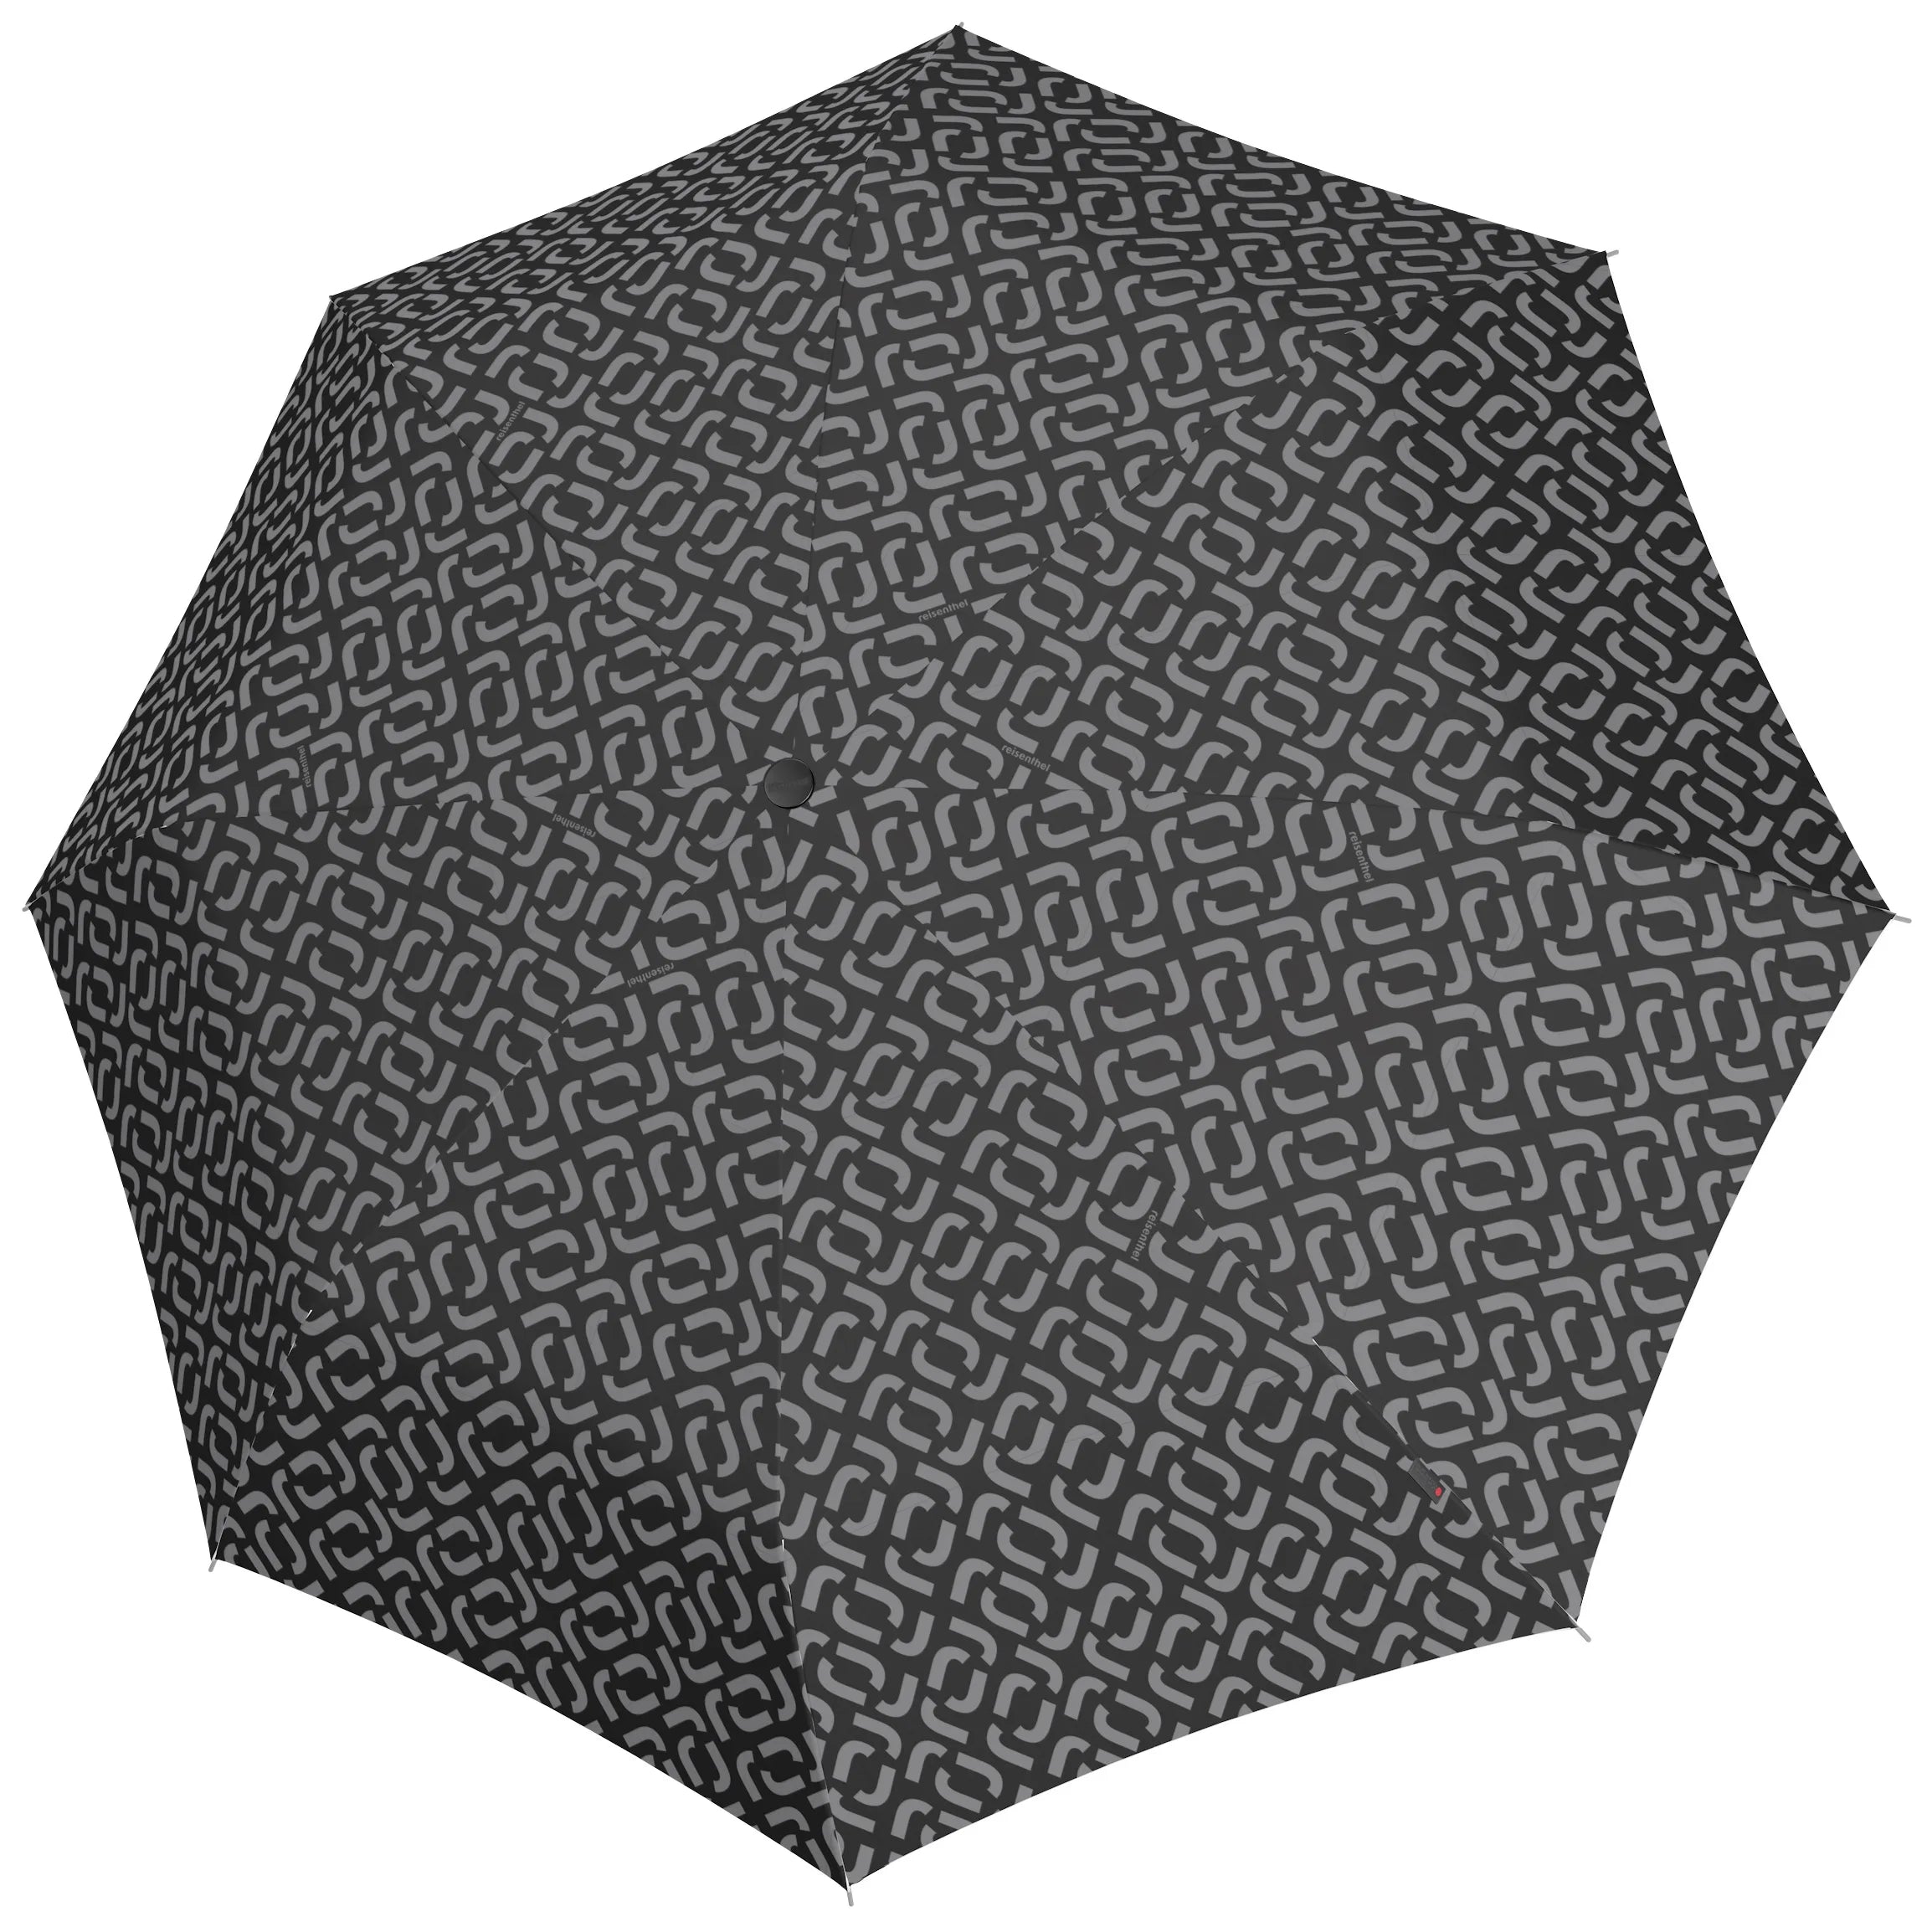 Reisenthel Travelling Umbrella Pocket Duomatic - Signature Black